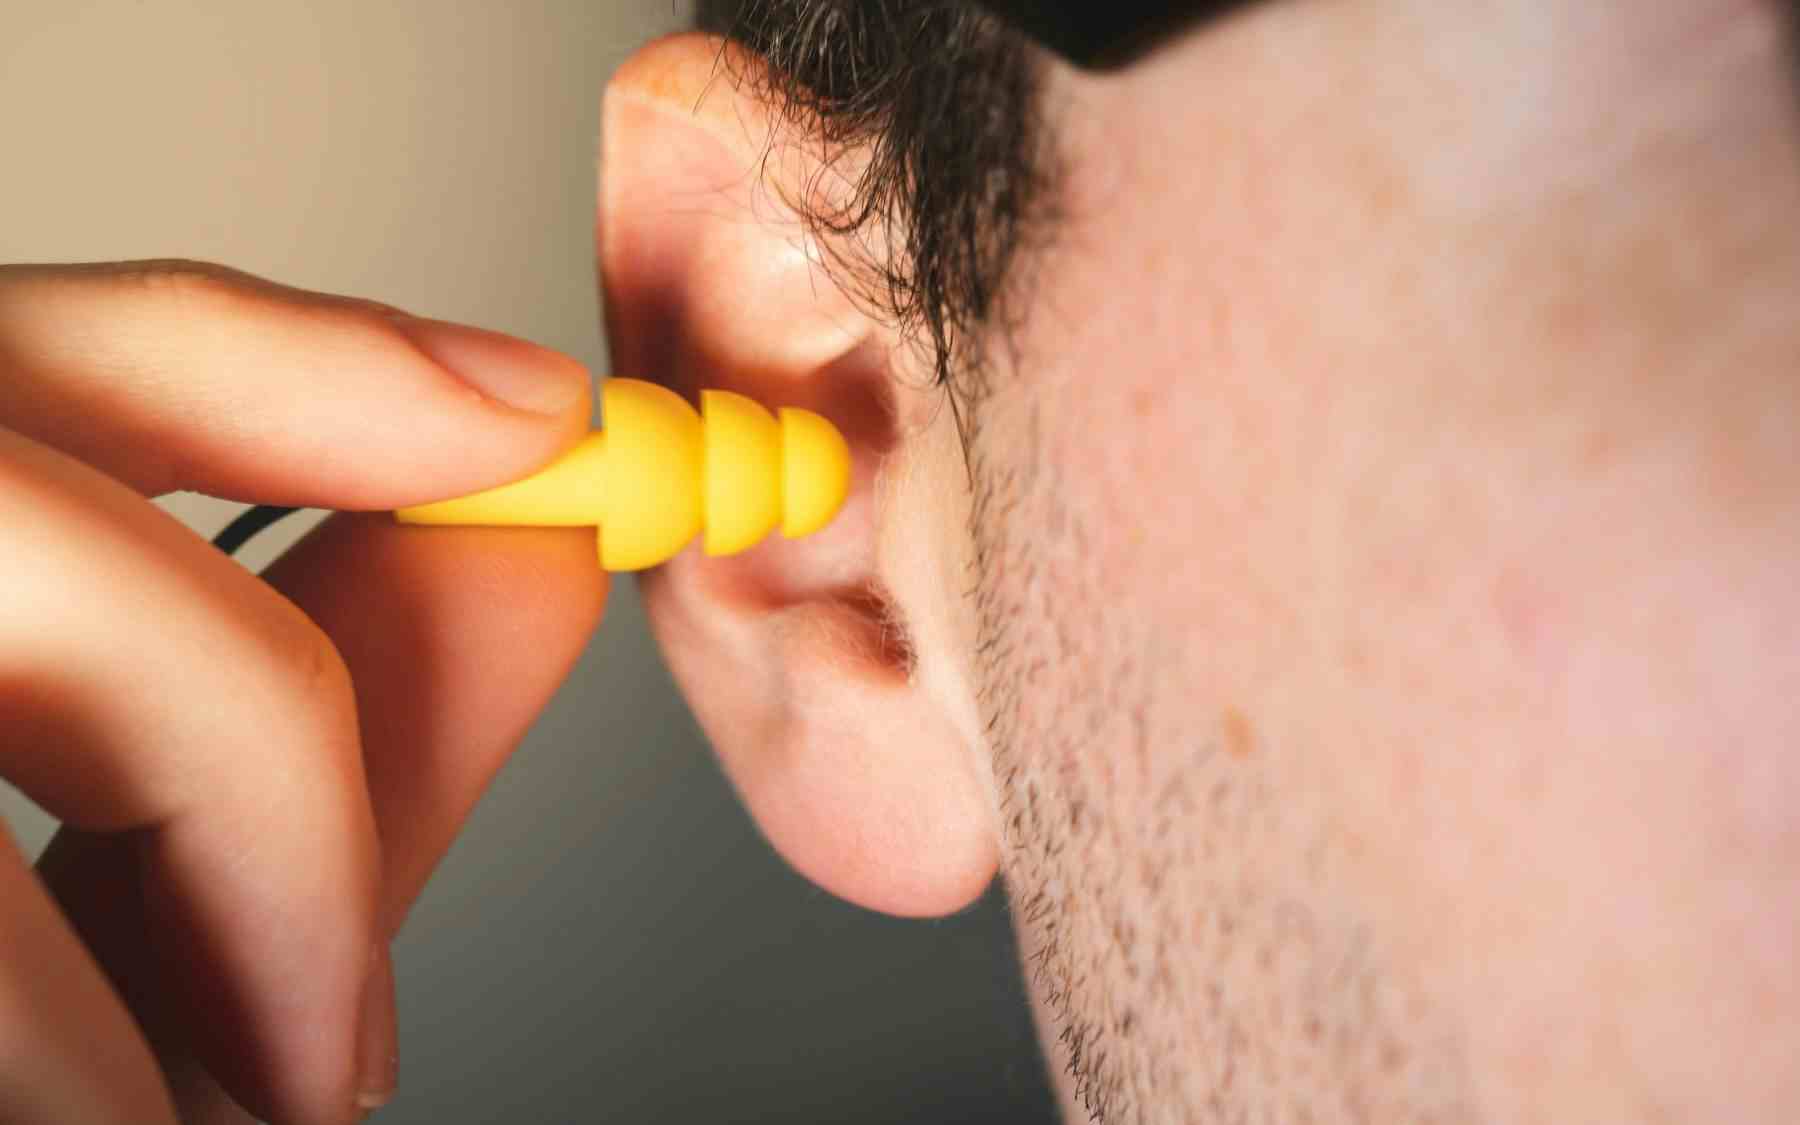 Person putting in an earplug